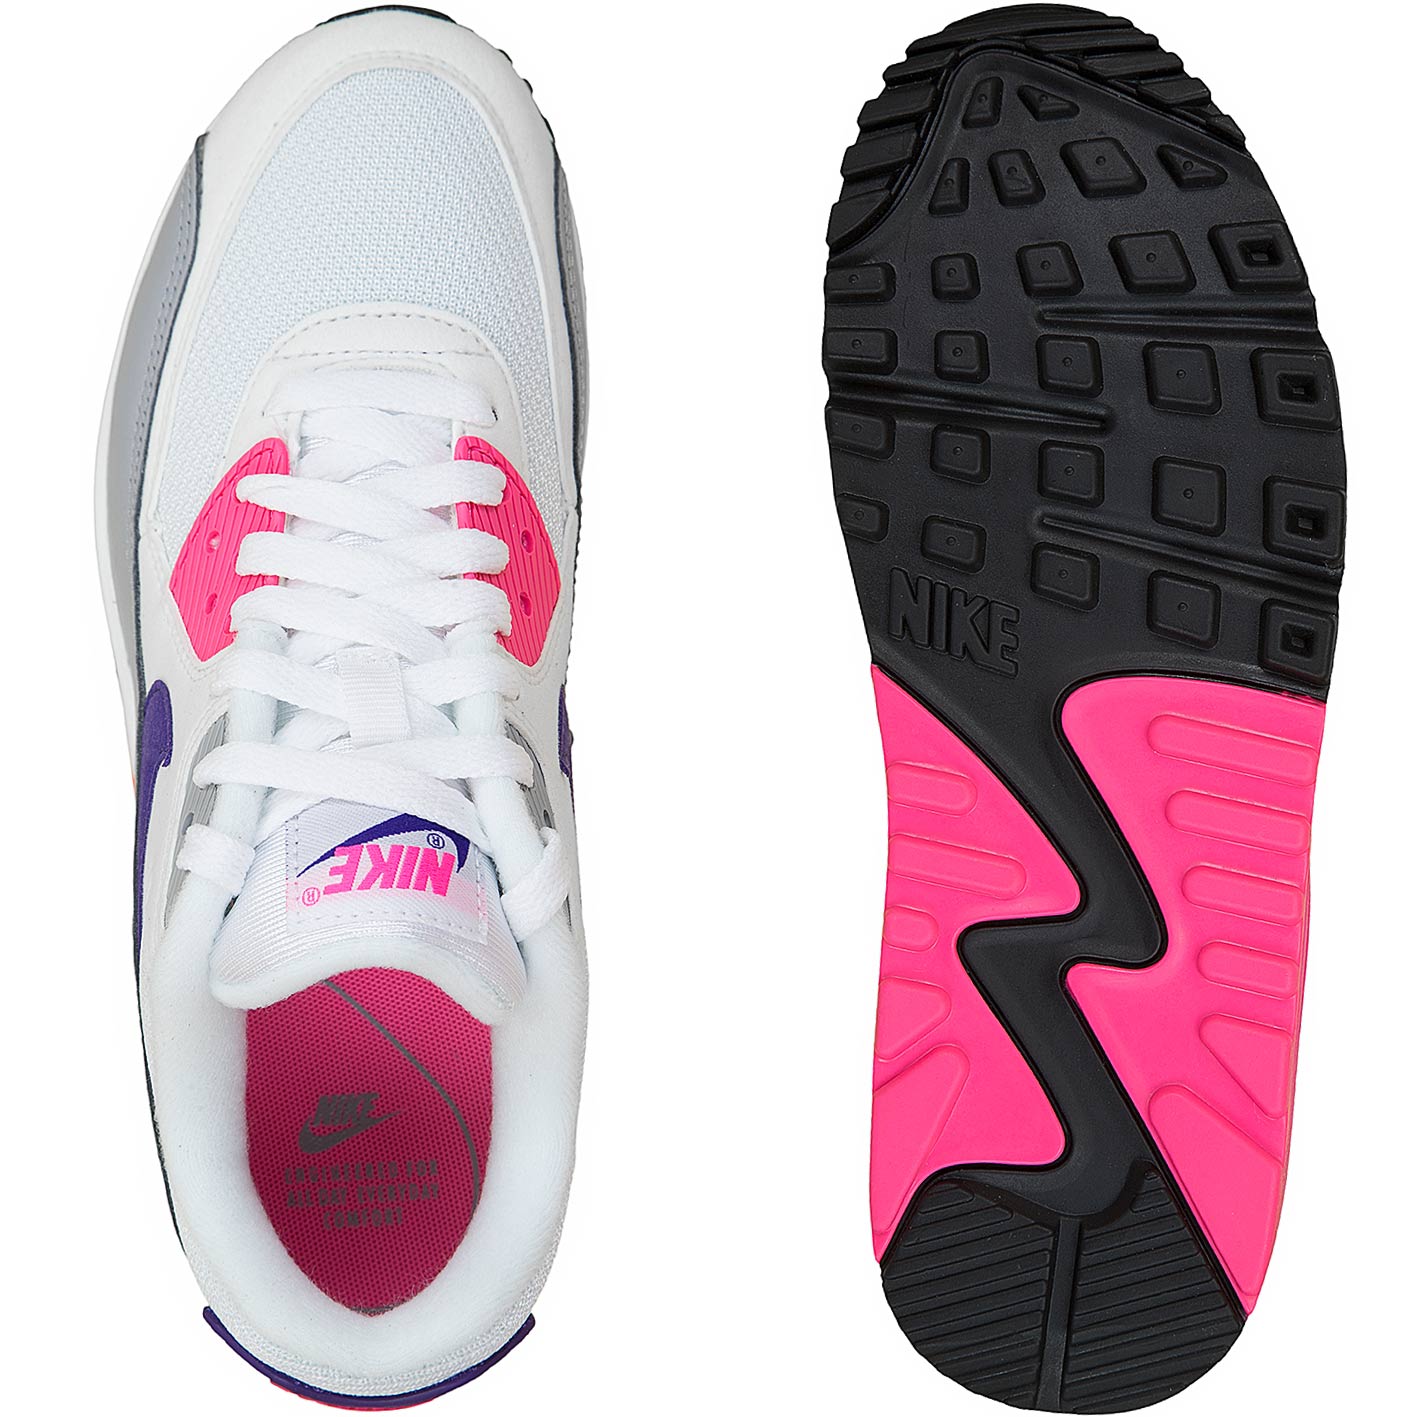 ☆ Nike Damen Sneaker 90 weiß/pink hier bestellen!